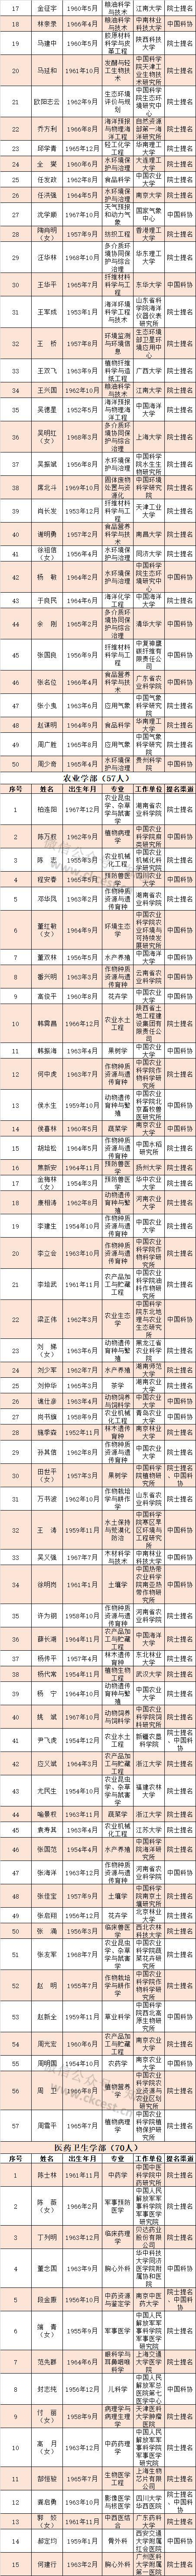 河南8人获中国工程院院士增选有效候选人 有你认识的吗